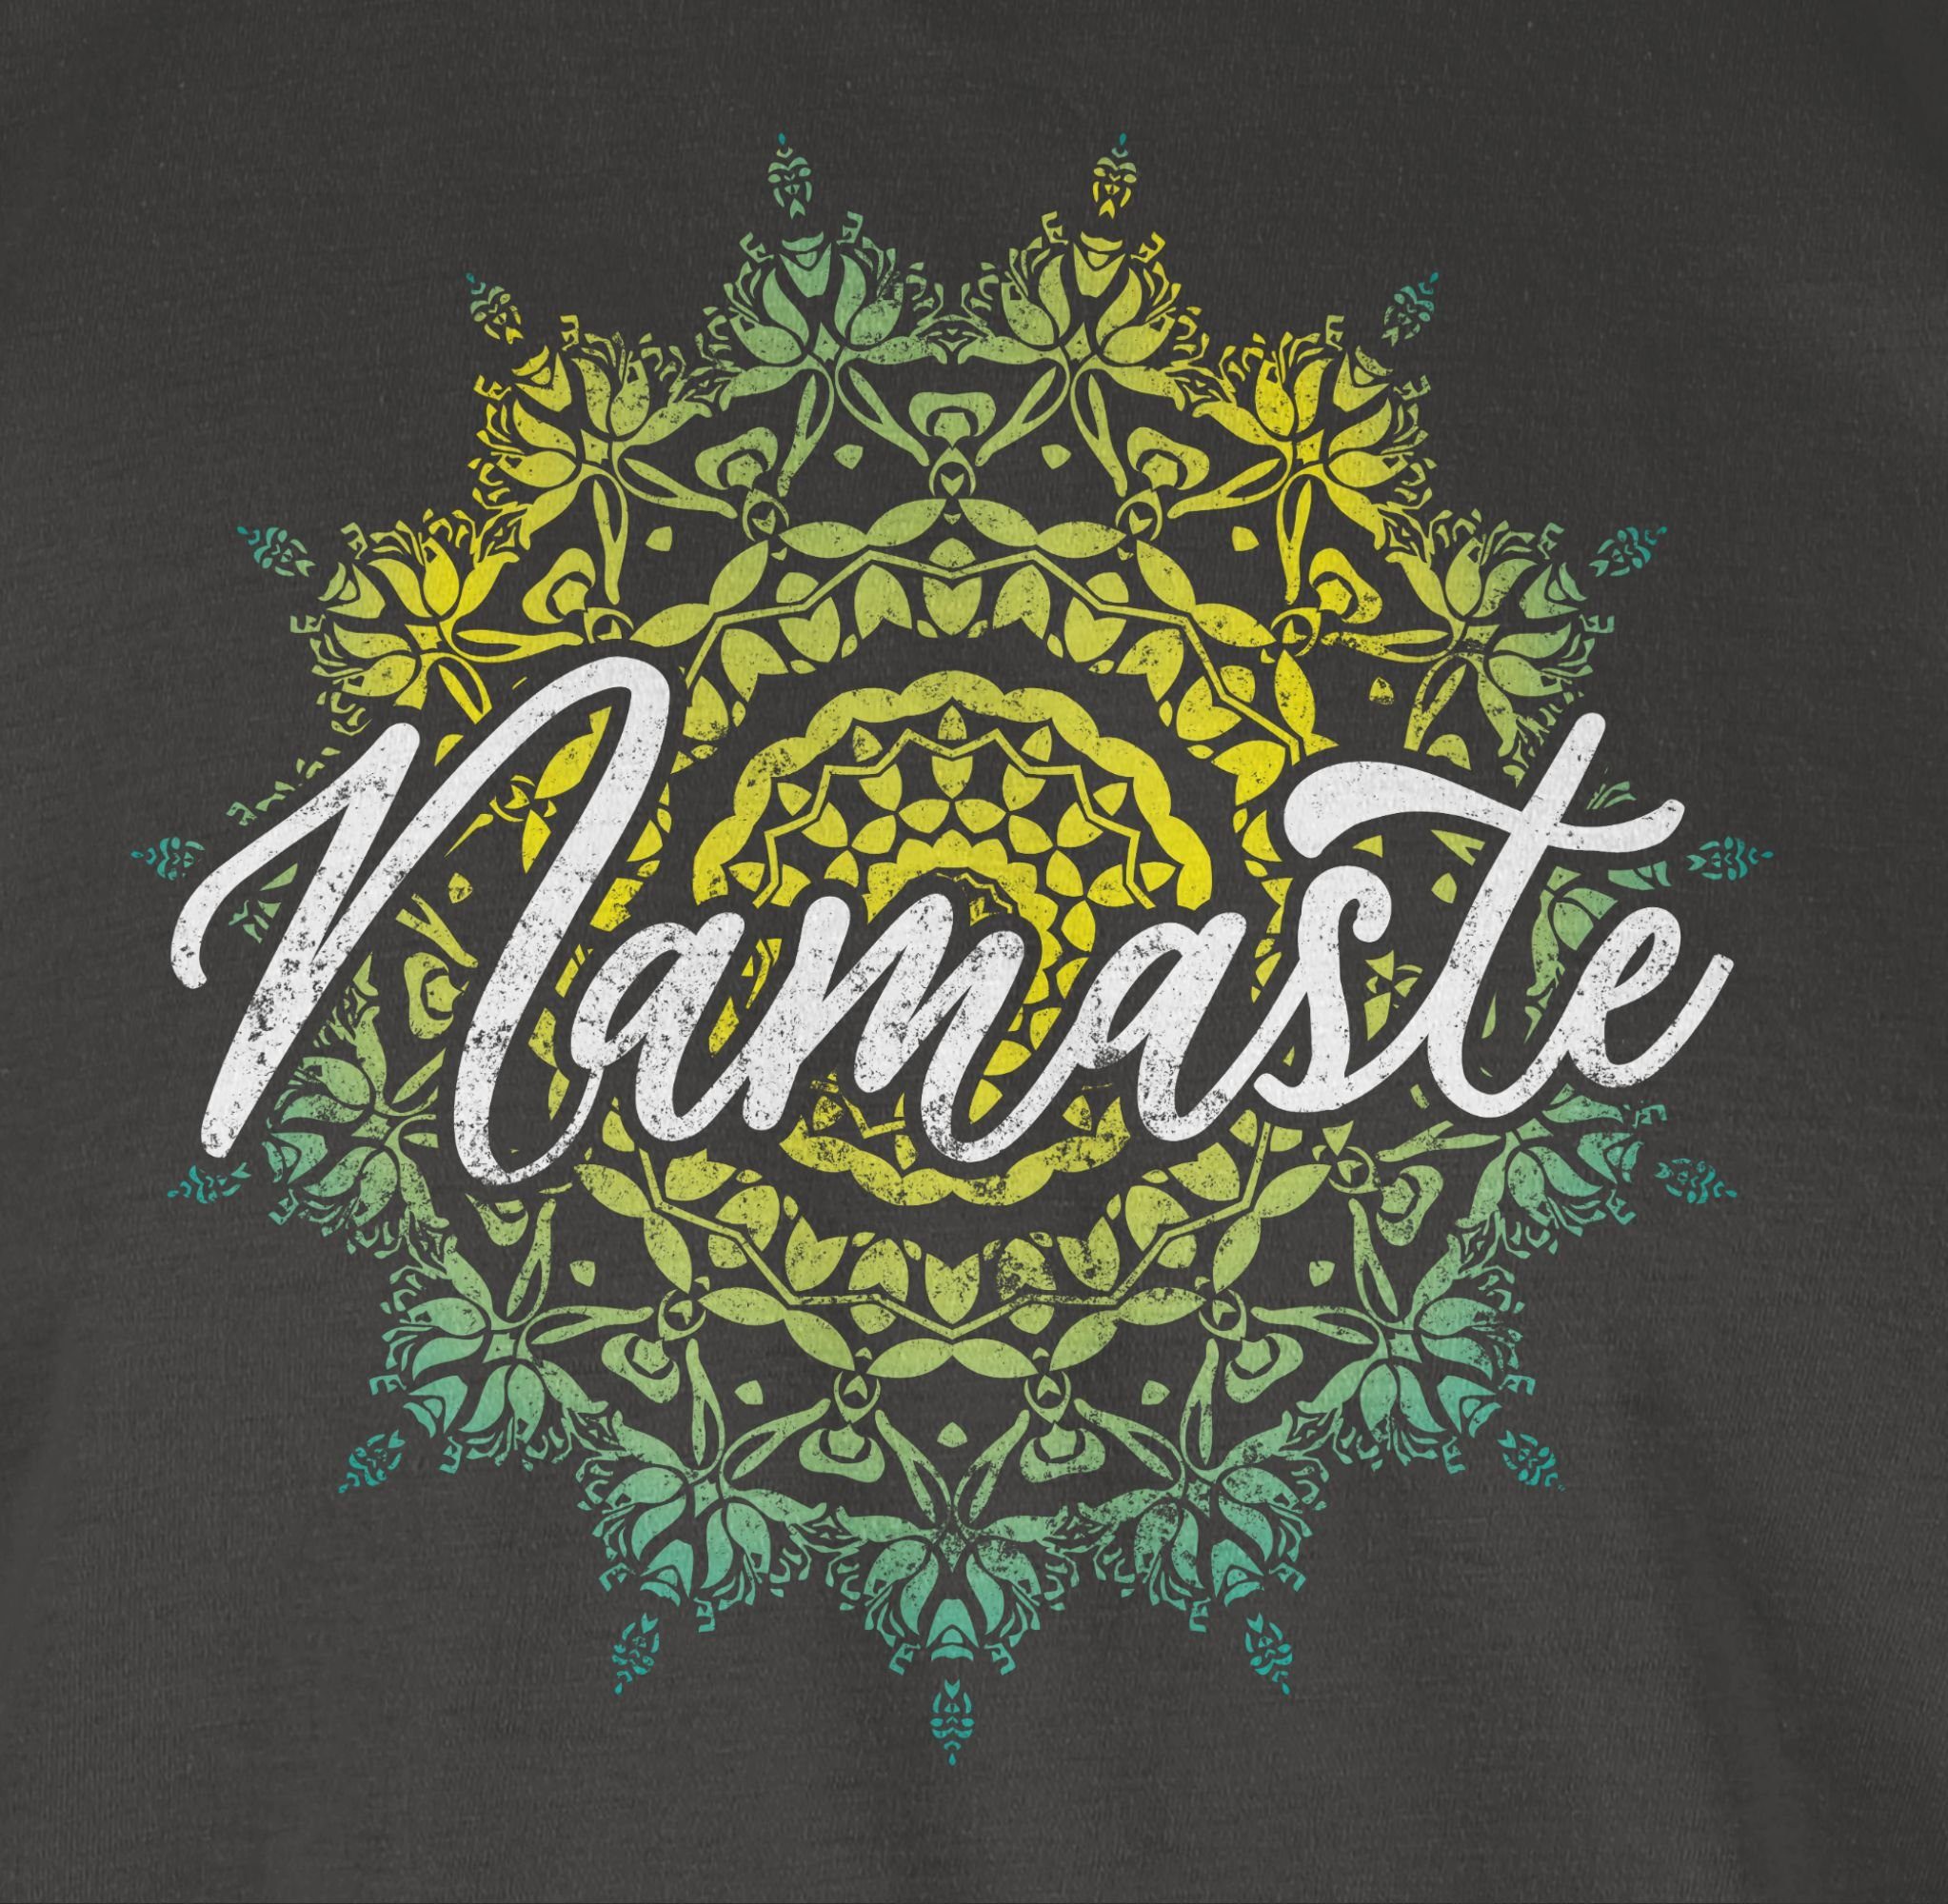 Shirtracer T-Shirt Namaste und Geschenk Vintage 01 Yoga Wellness Dunkelgrau